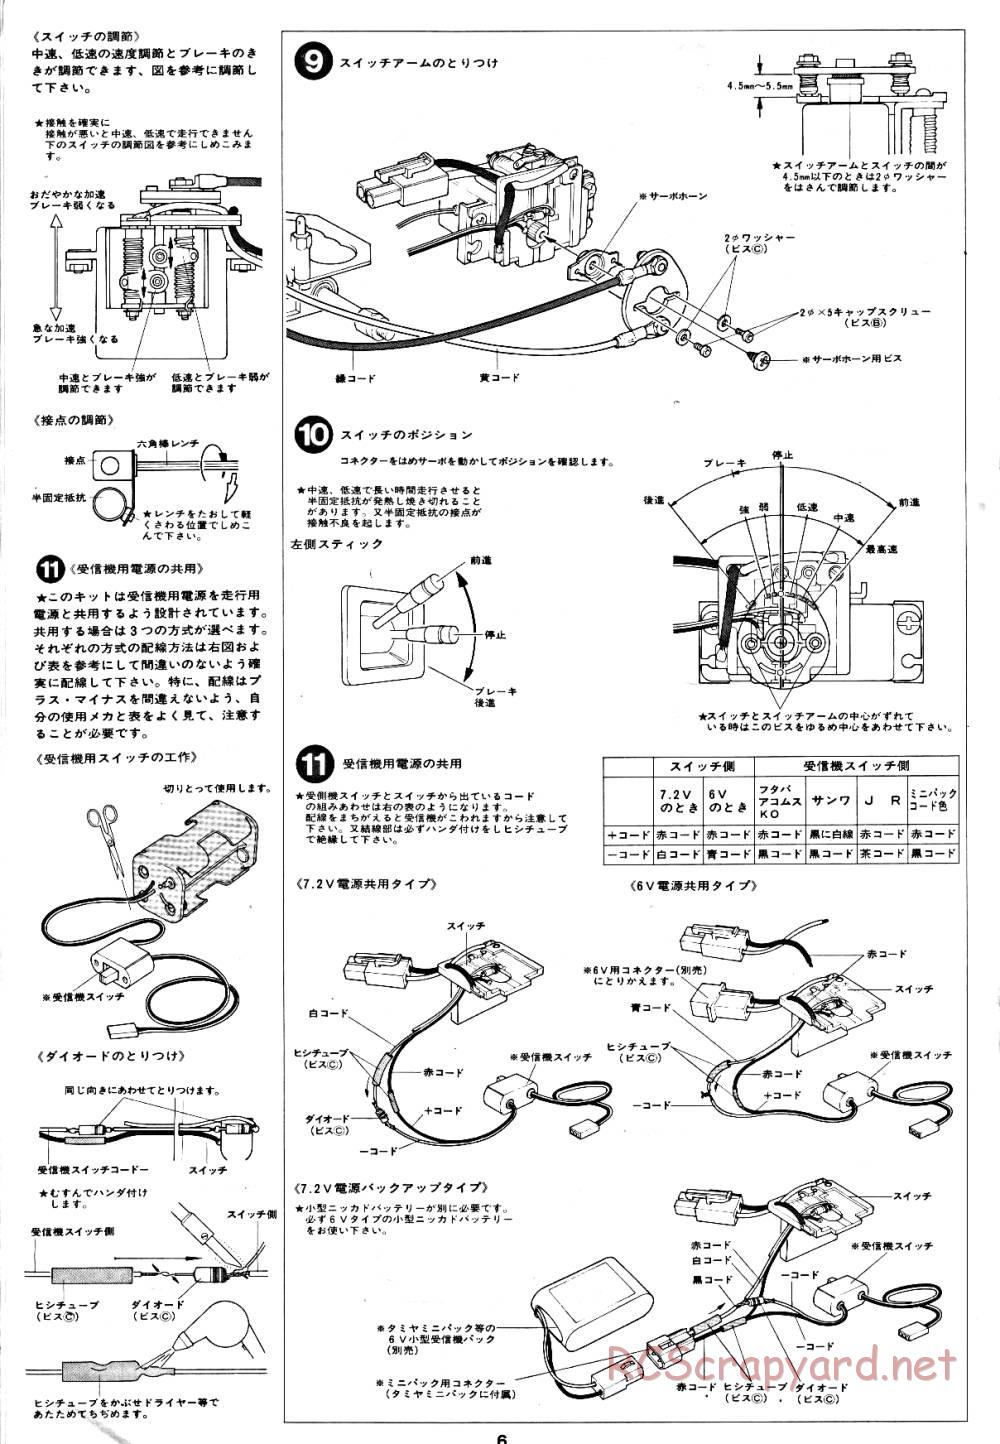 Tamiya - Tornado - RM MK.3 - 58032 - Manual - Page 6